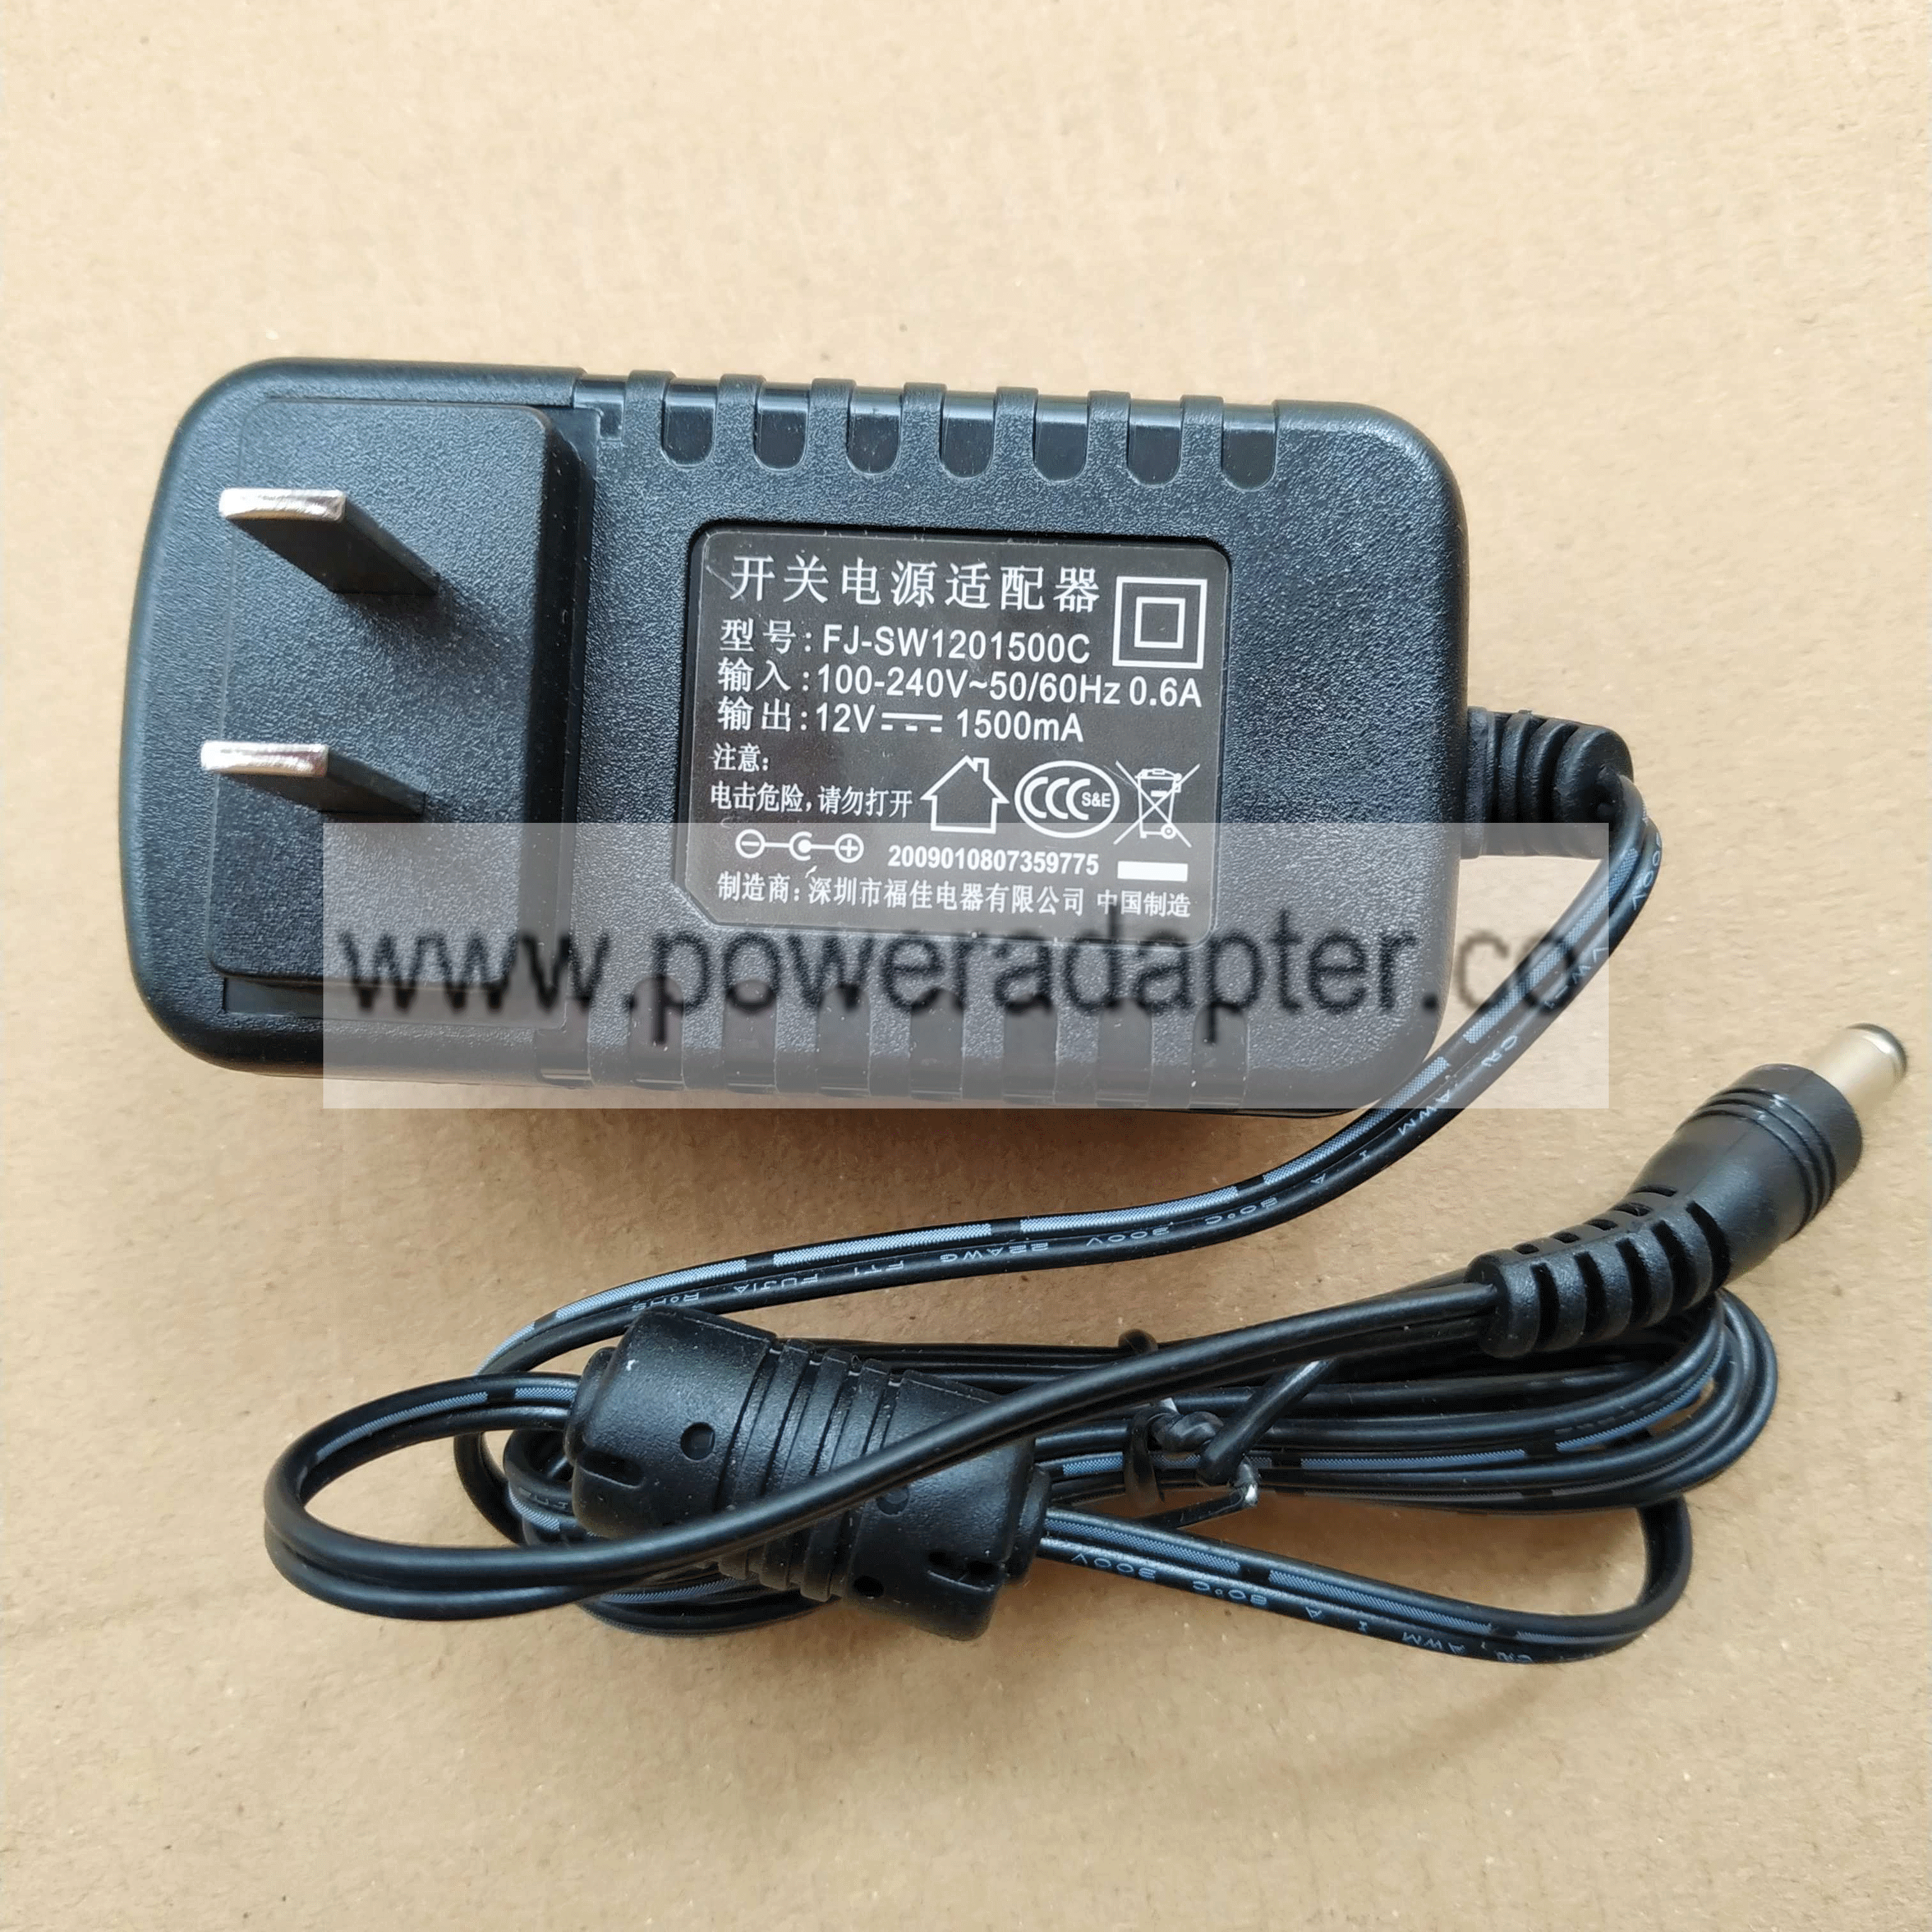 new original fujia 12V 1500mA ac power adapter charger FJ-SW1201500C DELIPPO ： brand: FUJIA model: FJ-SW1201 - Click Image to Close